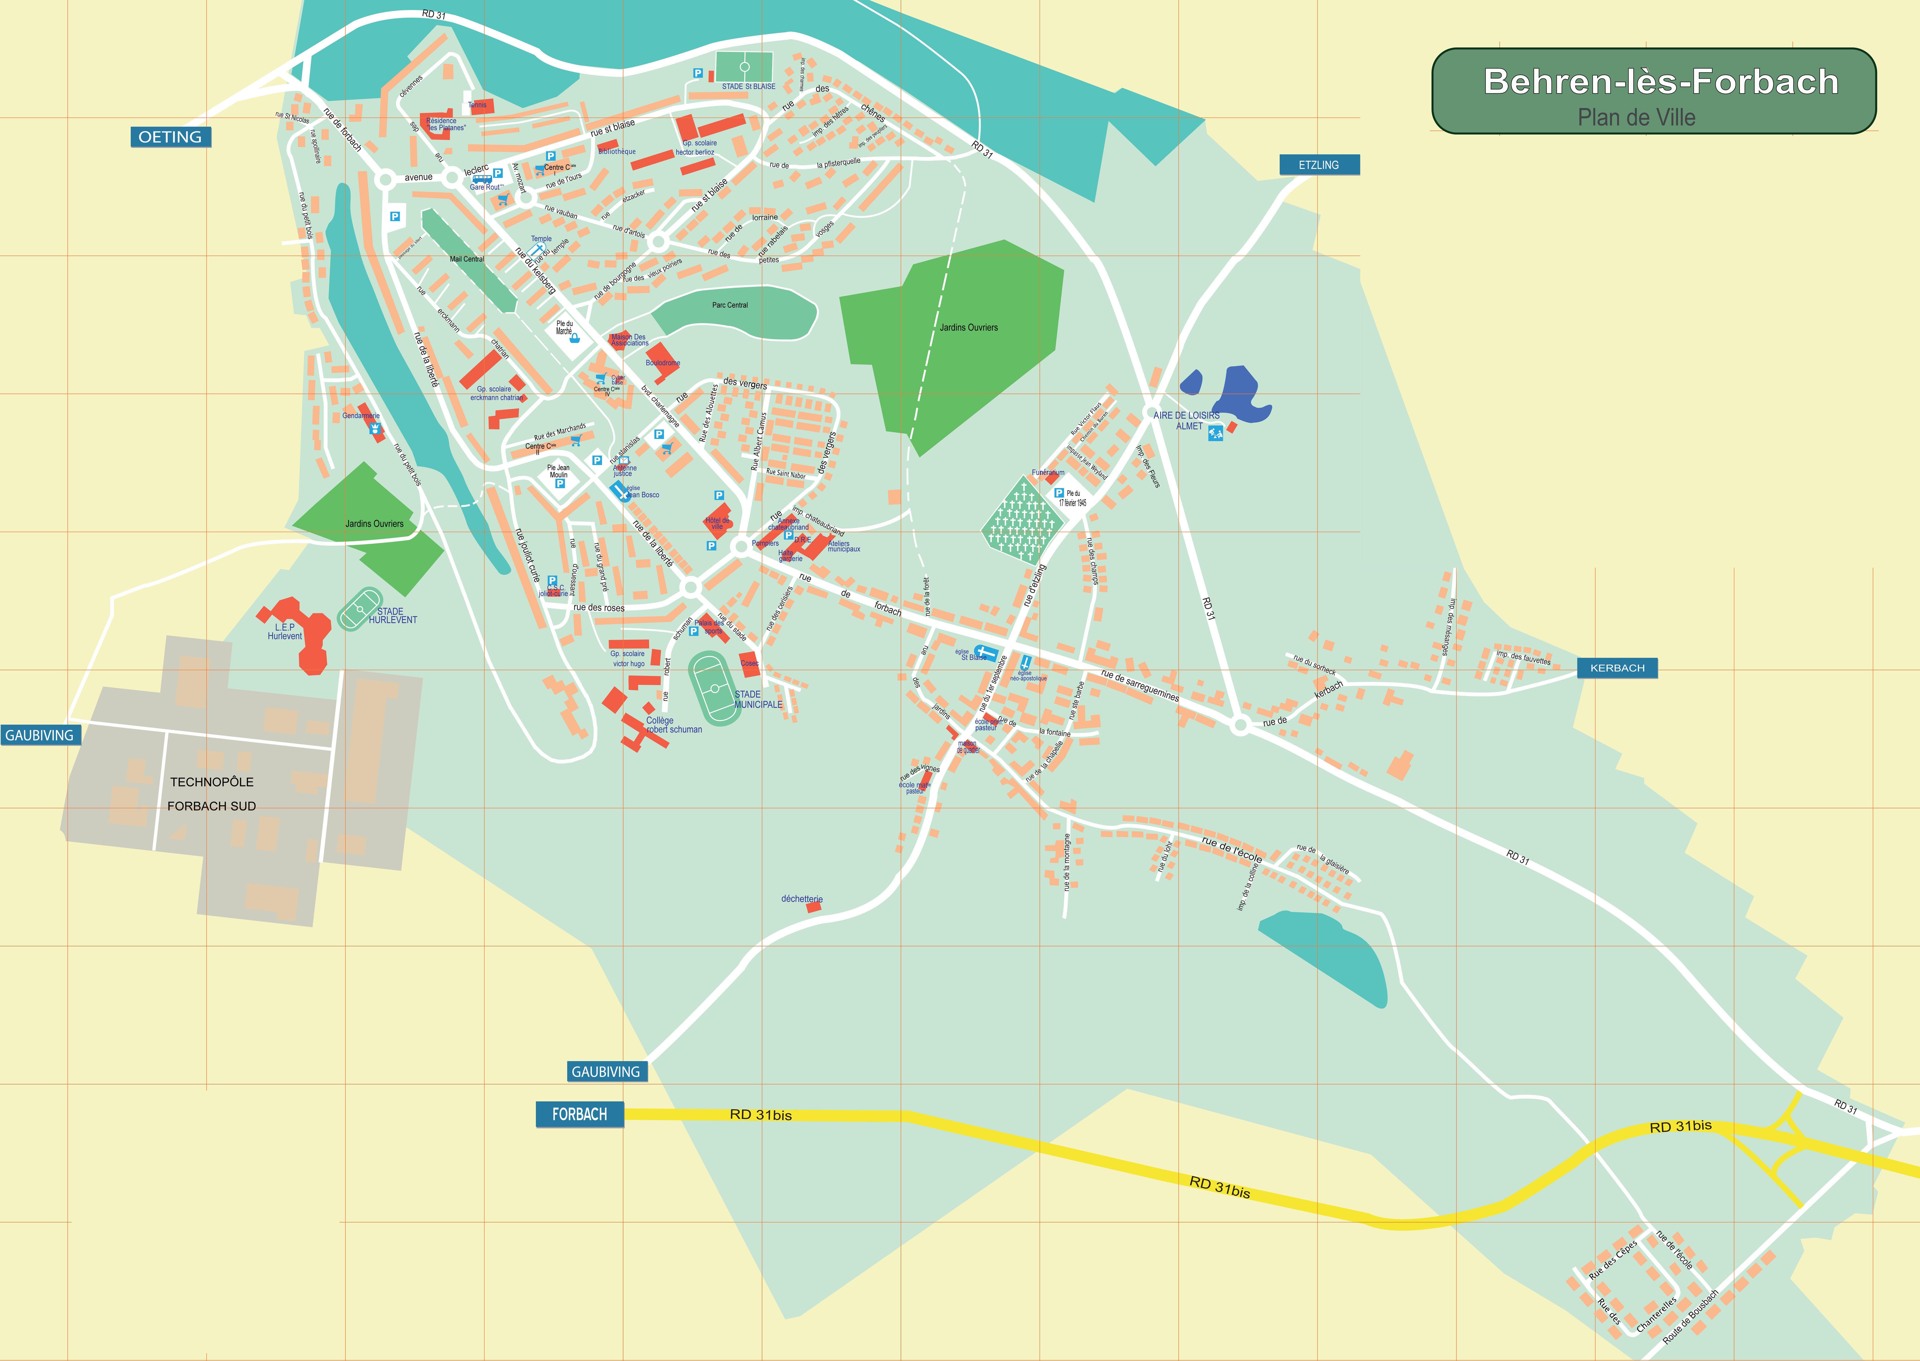 https://www.ville-behren.fr/cartographie